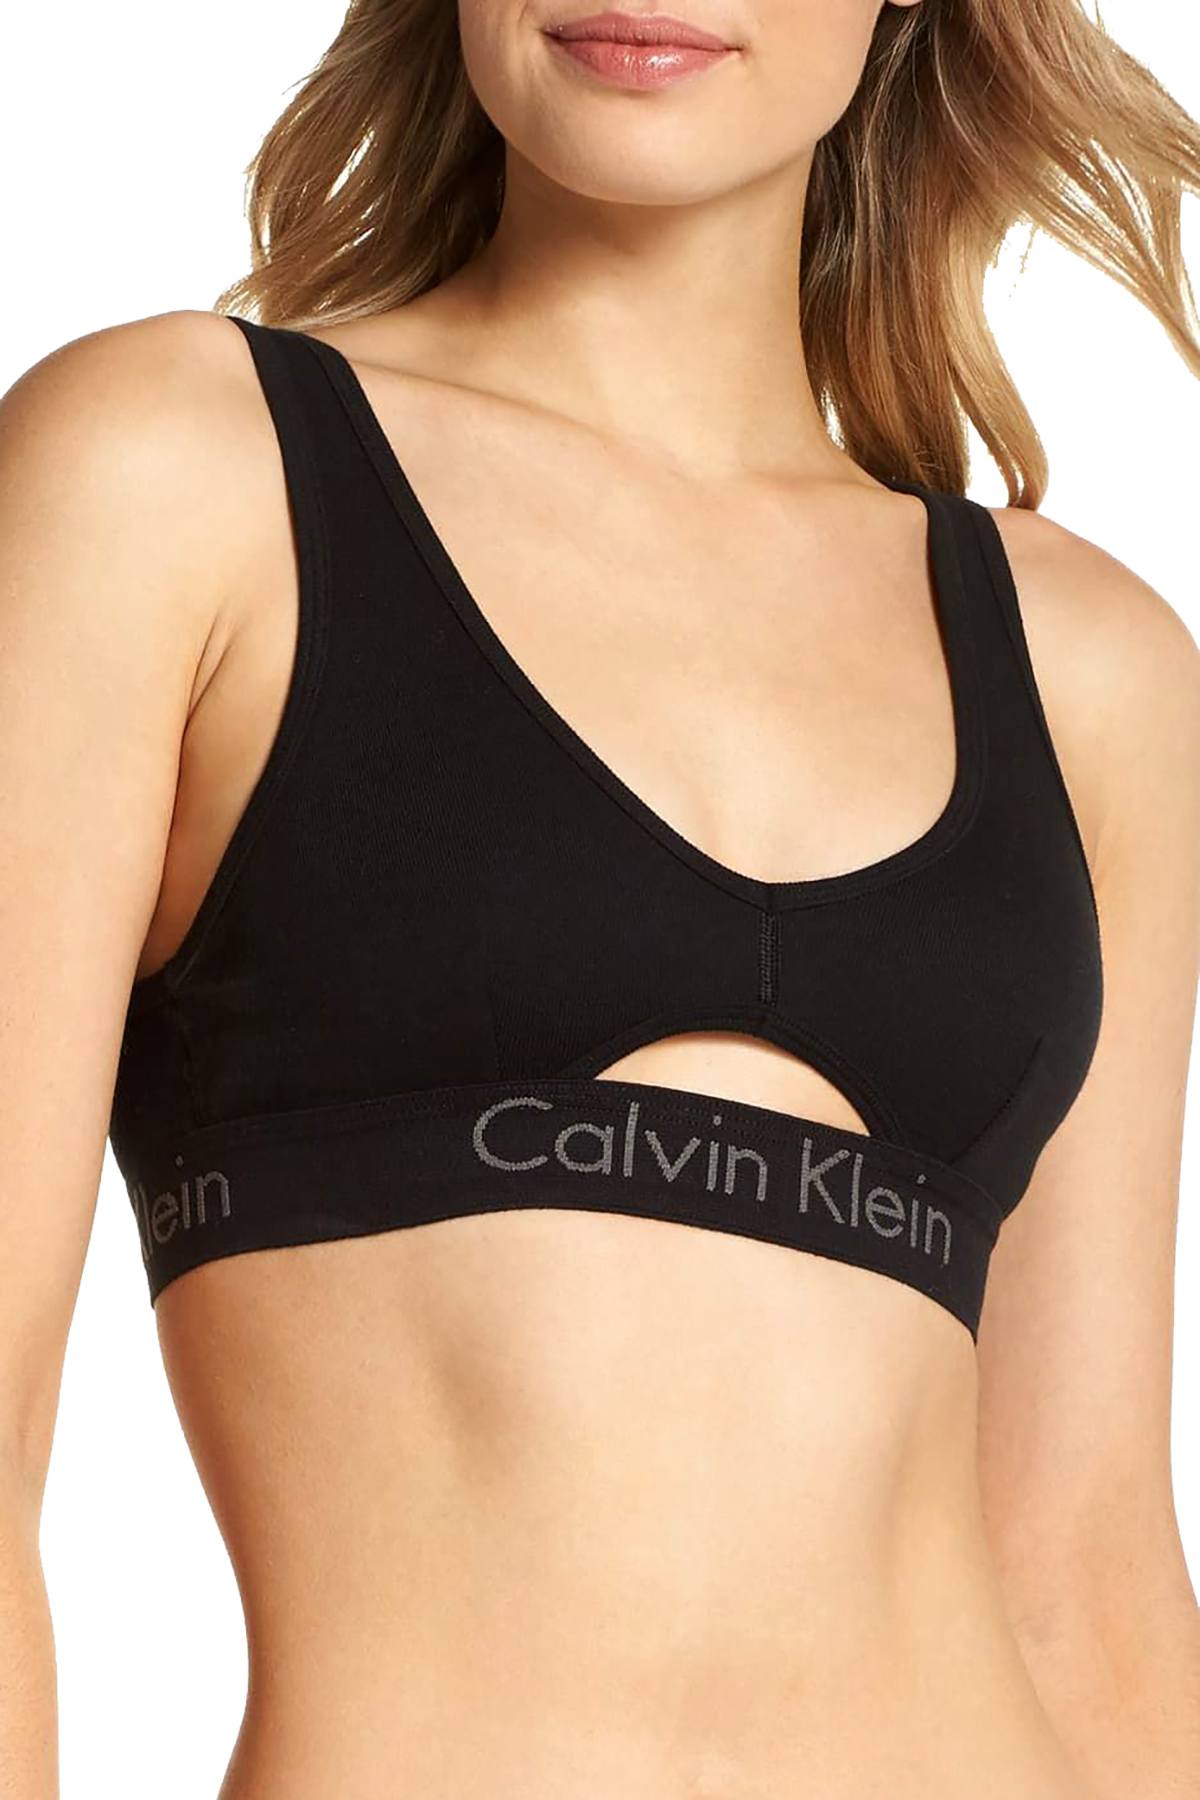 Calvin Klein Black Keyhole Body Unlined Bralette